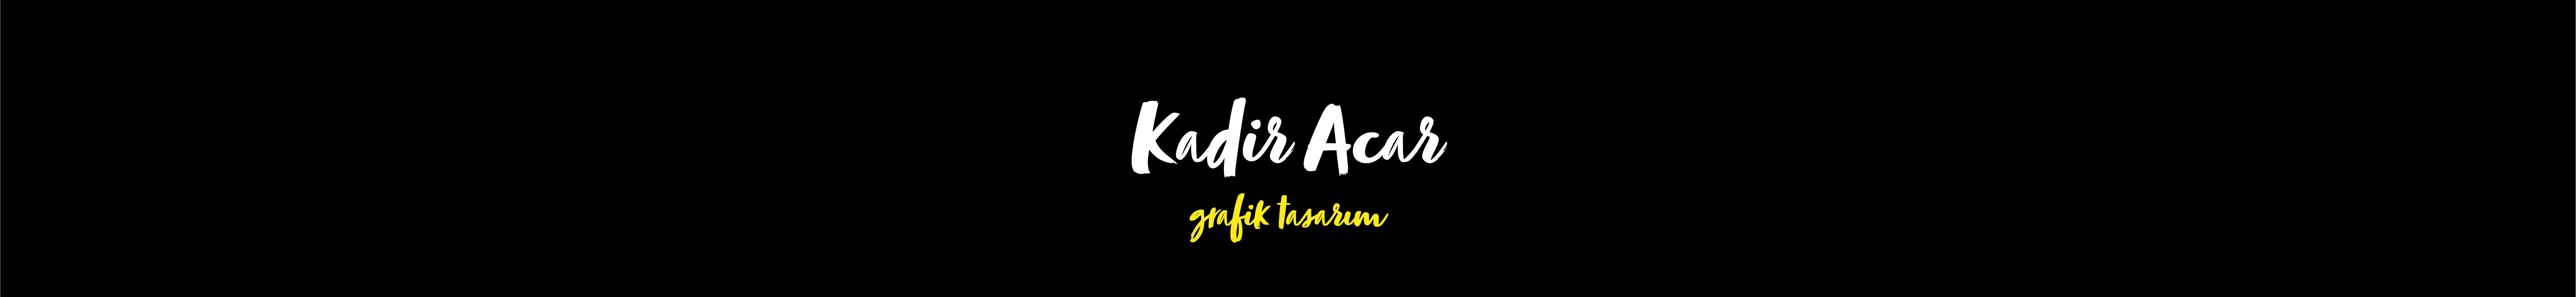 Kadir Acar 的个人资料横幅